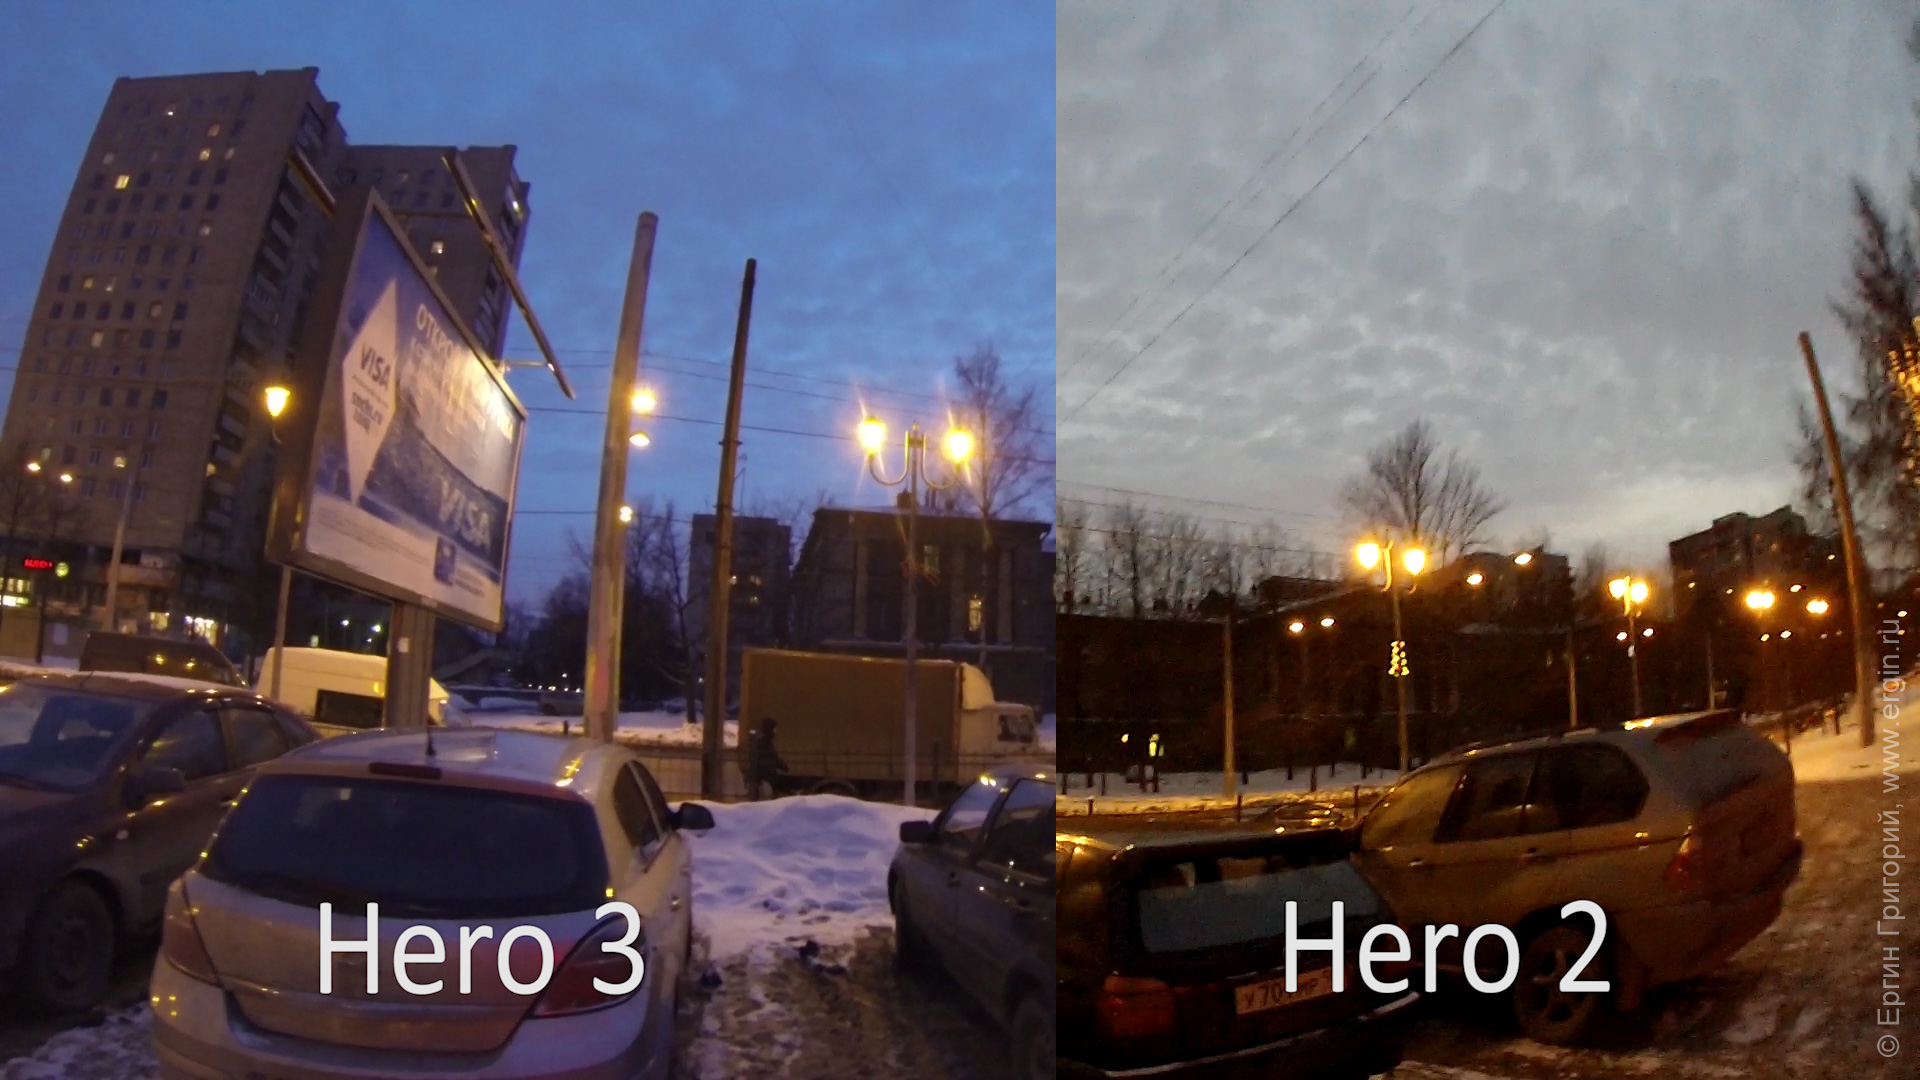 Сумерки Hero 3 уходит в синий цвет, Hero 2 естественне отображает картинку